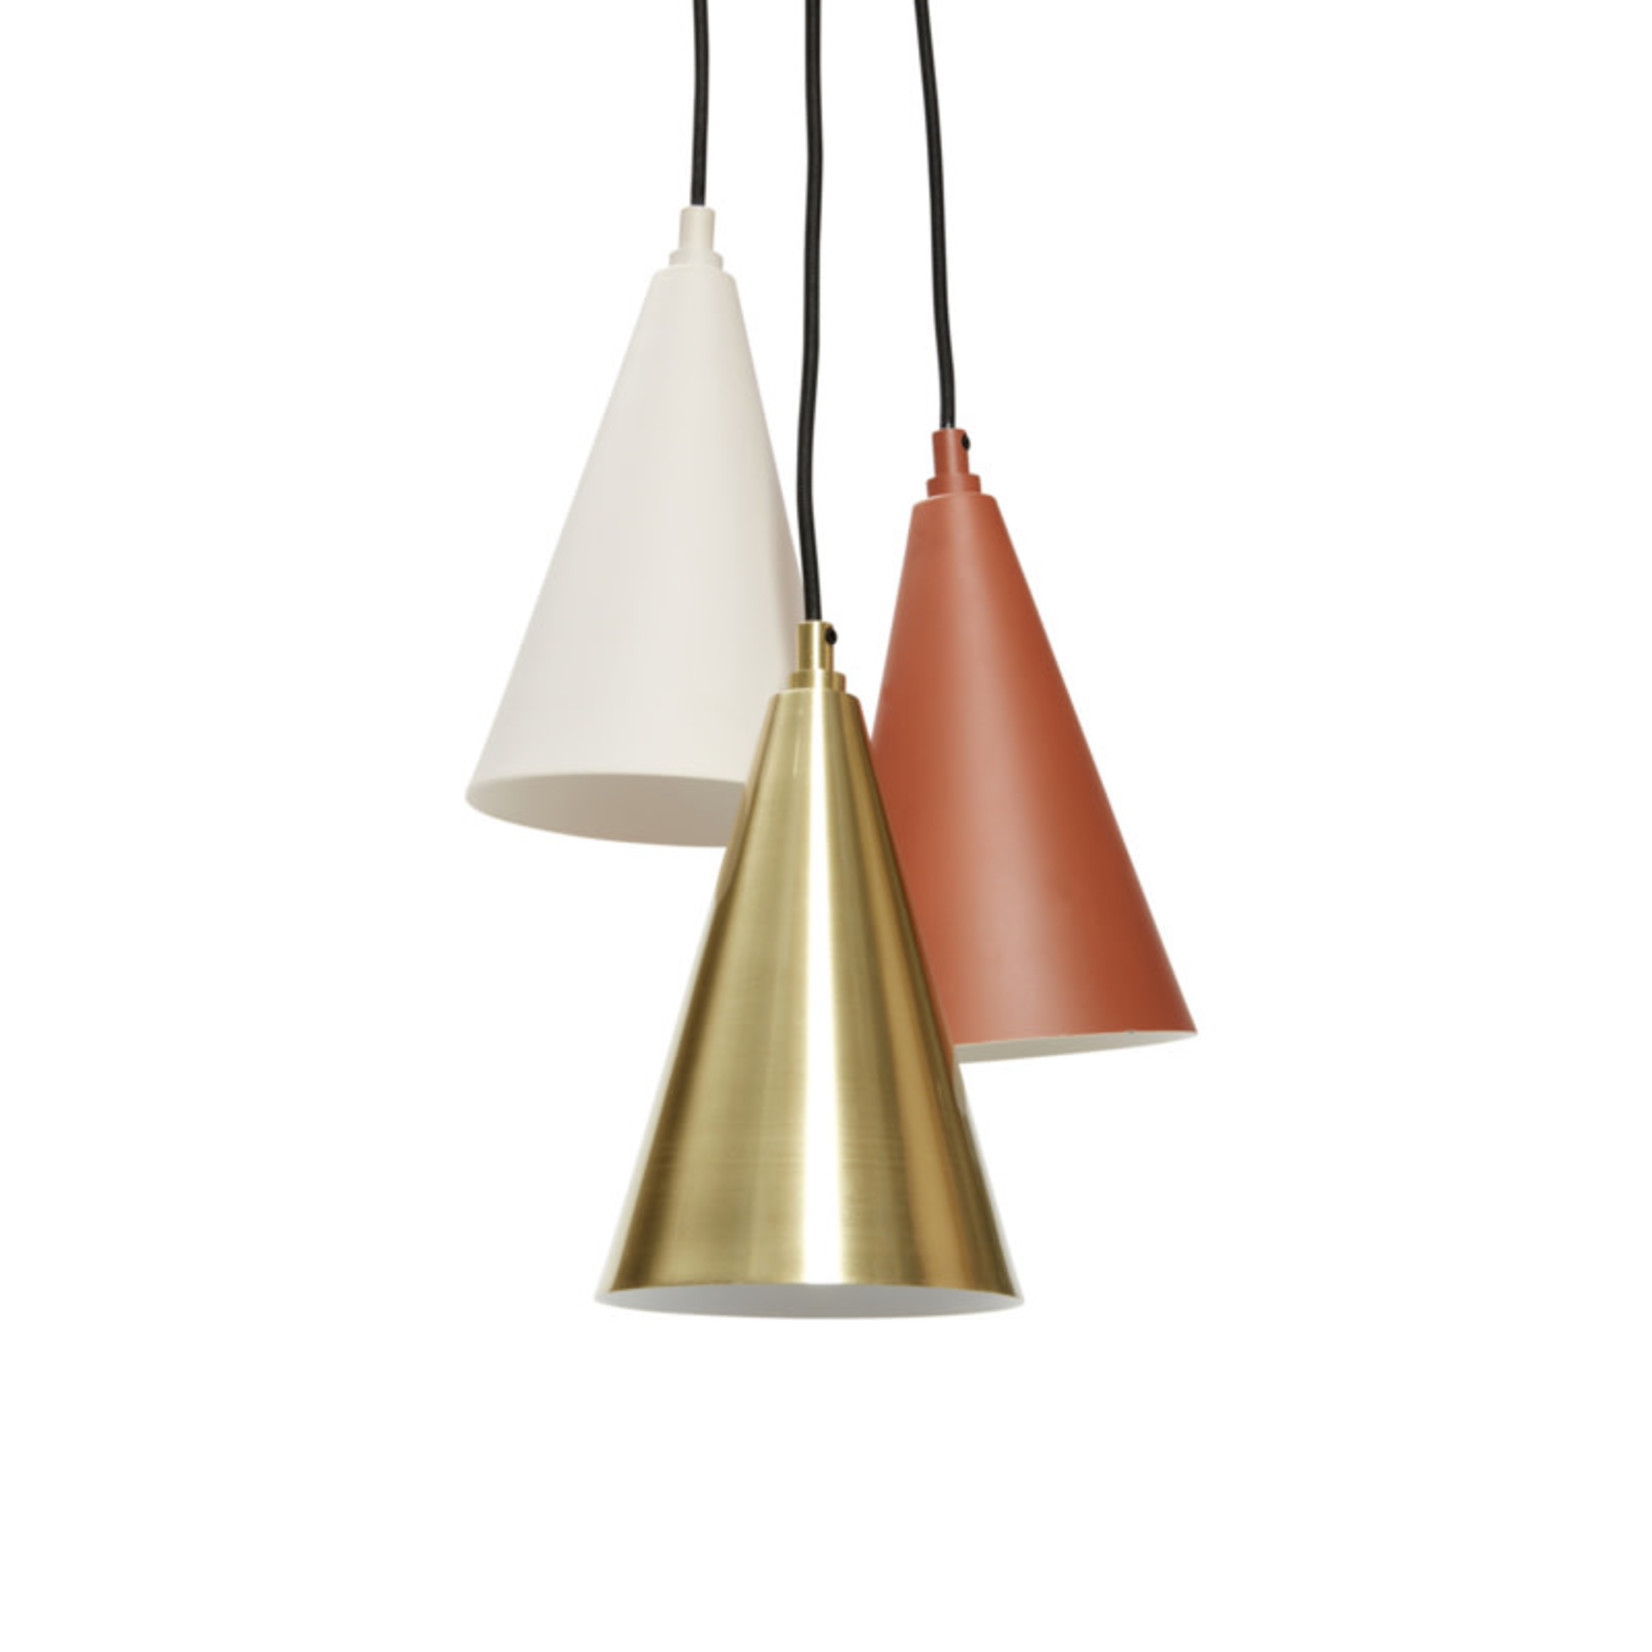 Hübsch Hübsch hanglamp, set van drie, metaal, messing/wit/terra